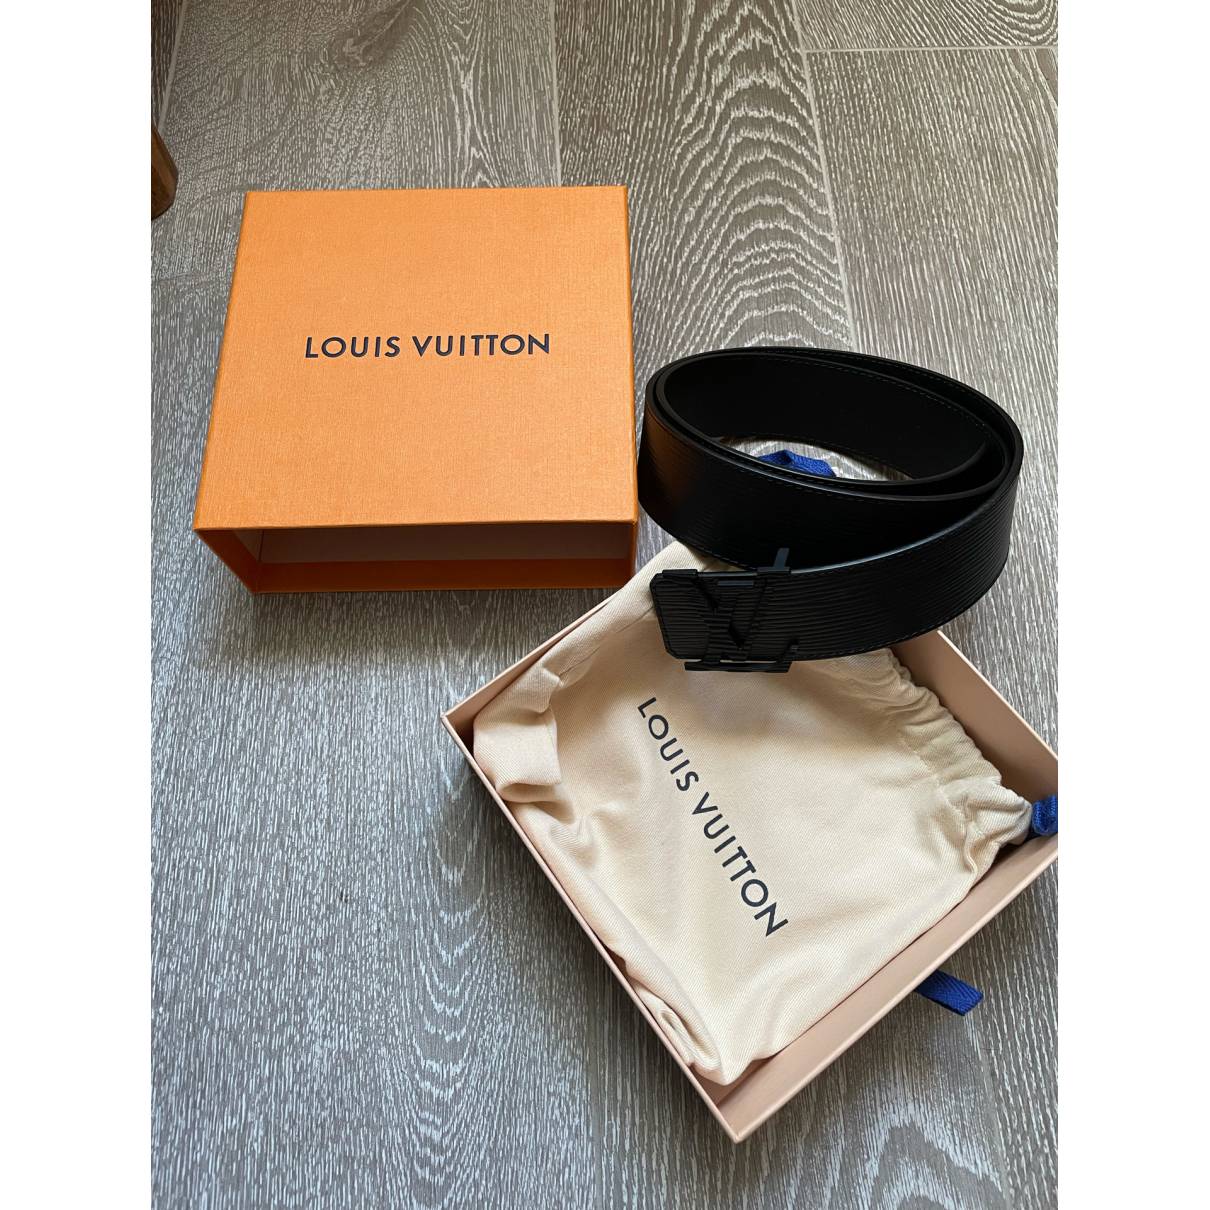 Louis Vuitton Men's Belt M9229, Men's Fashion, Watches